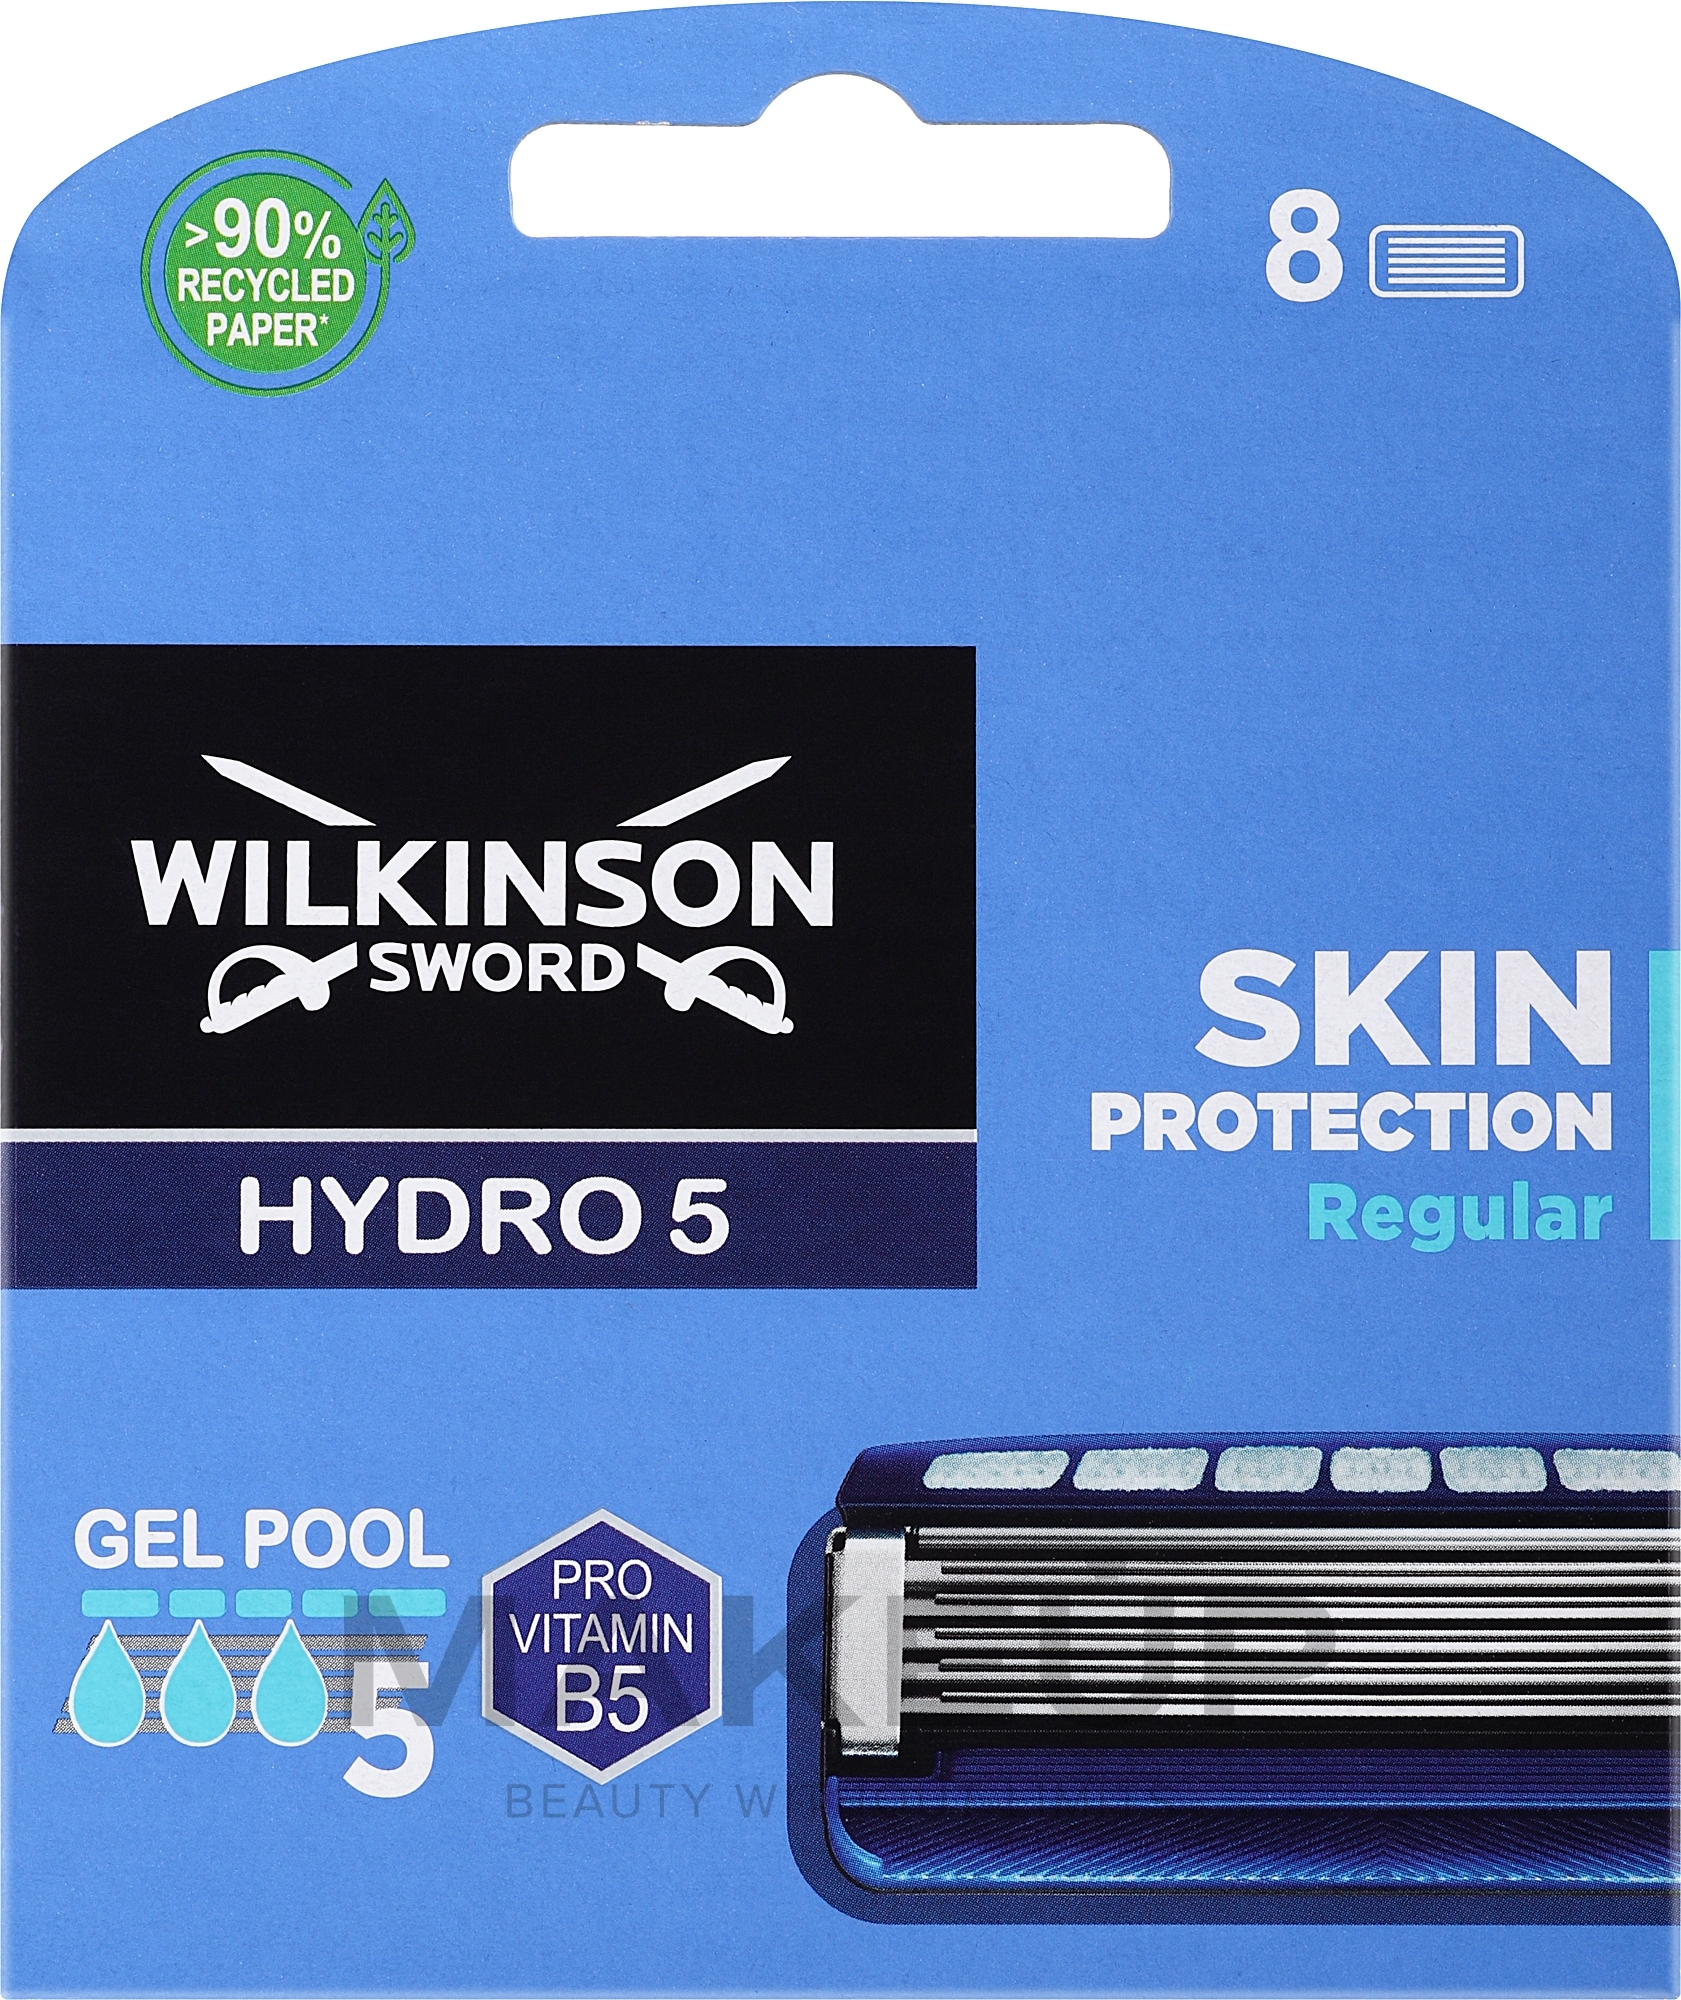 Zestaw wymiennych ostrzy, 8 sztuk. - Wilkinson Sword Hydro 5 Skin Protection Regular — Zdjęcie 8 szt.